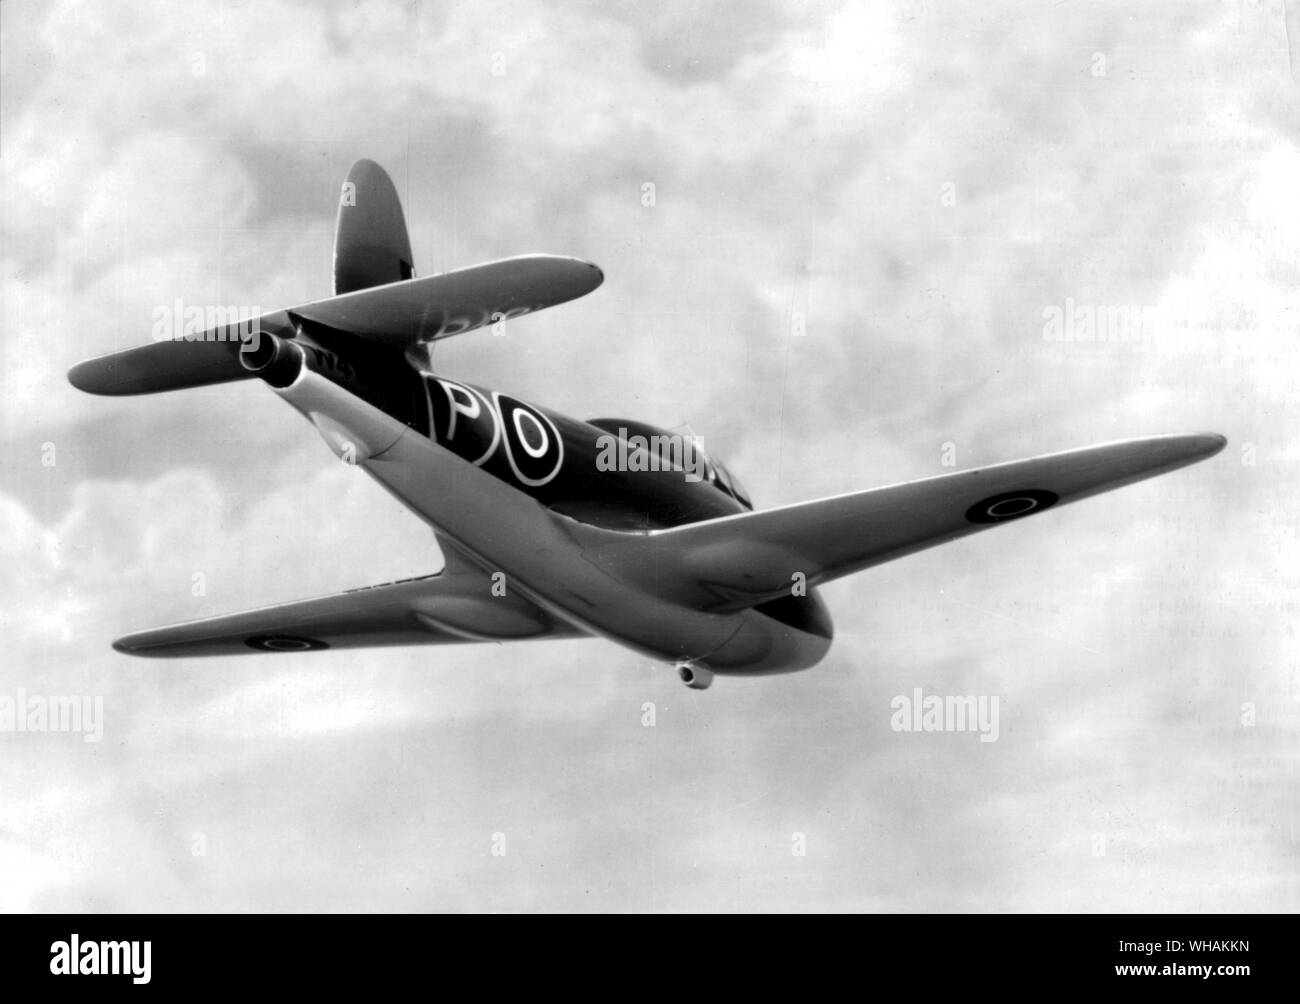 Un musée modèle du Gloster E28/29 le premier avion à propulsion à réaction britannique qui effectue son premier vol le 15 mai 1941 Banque D'Images